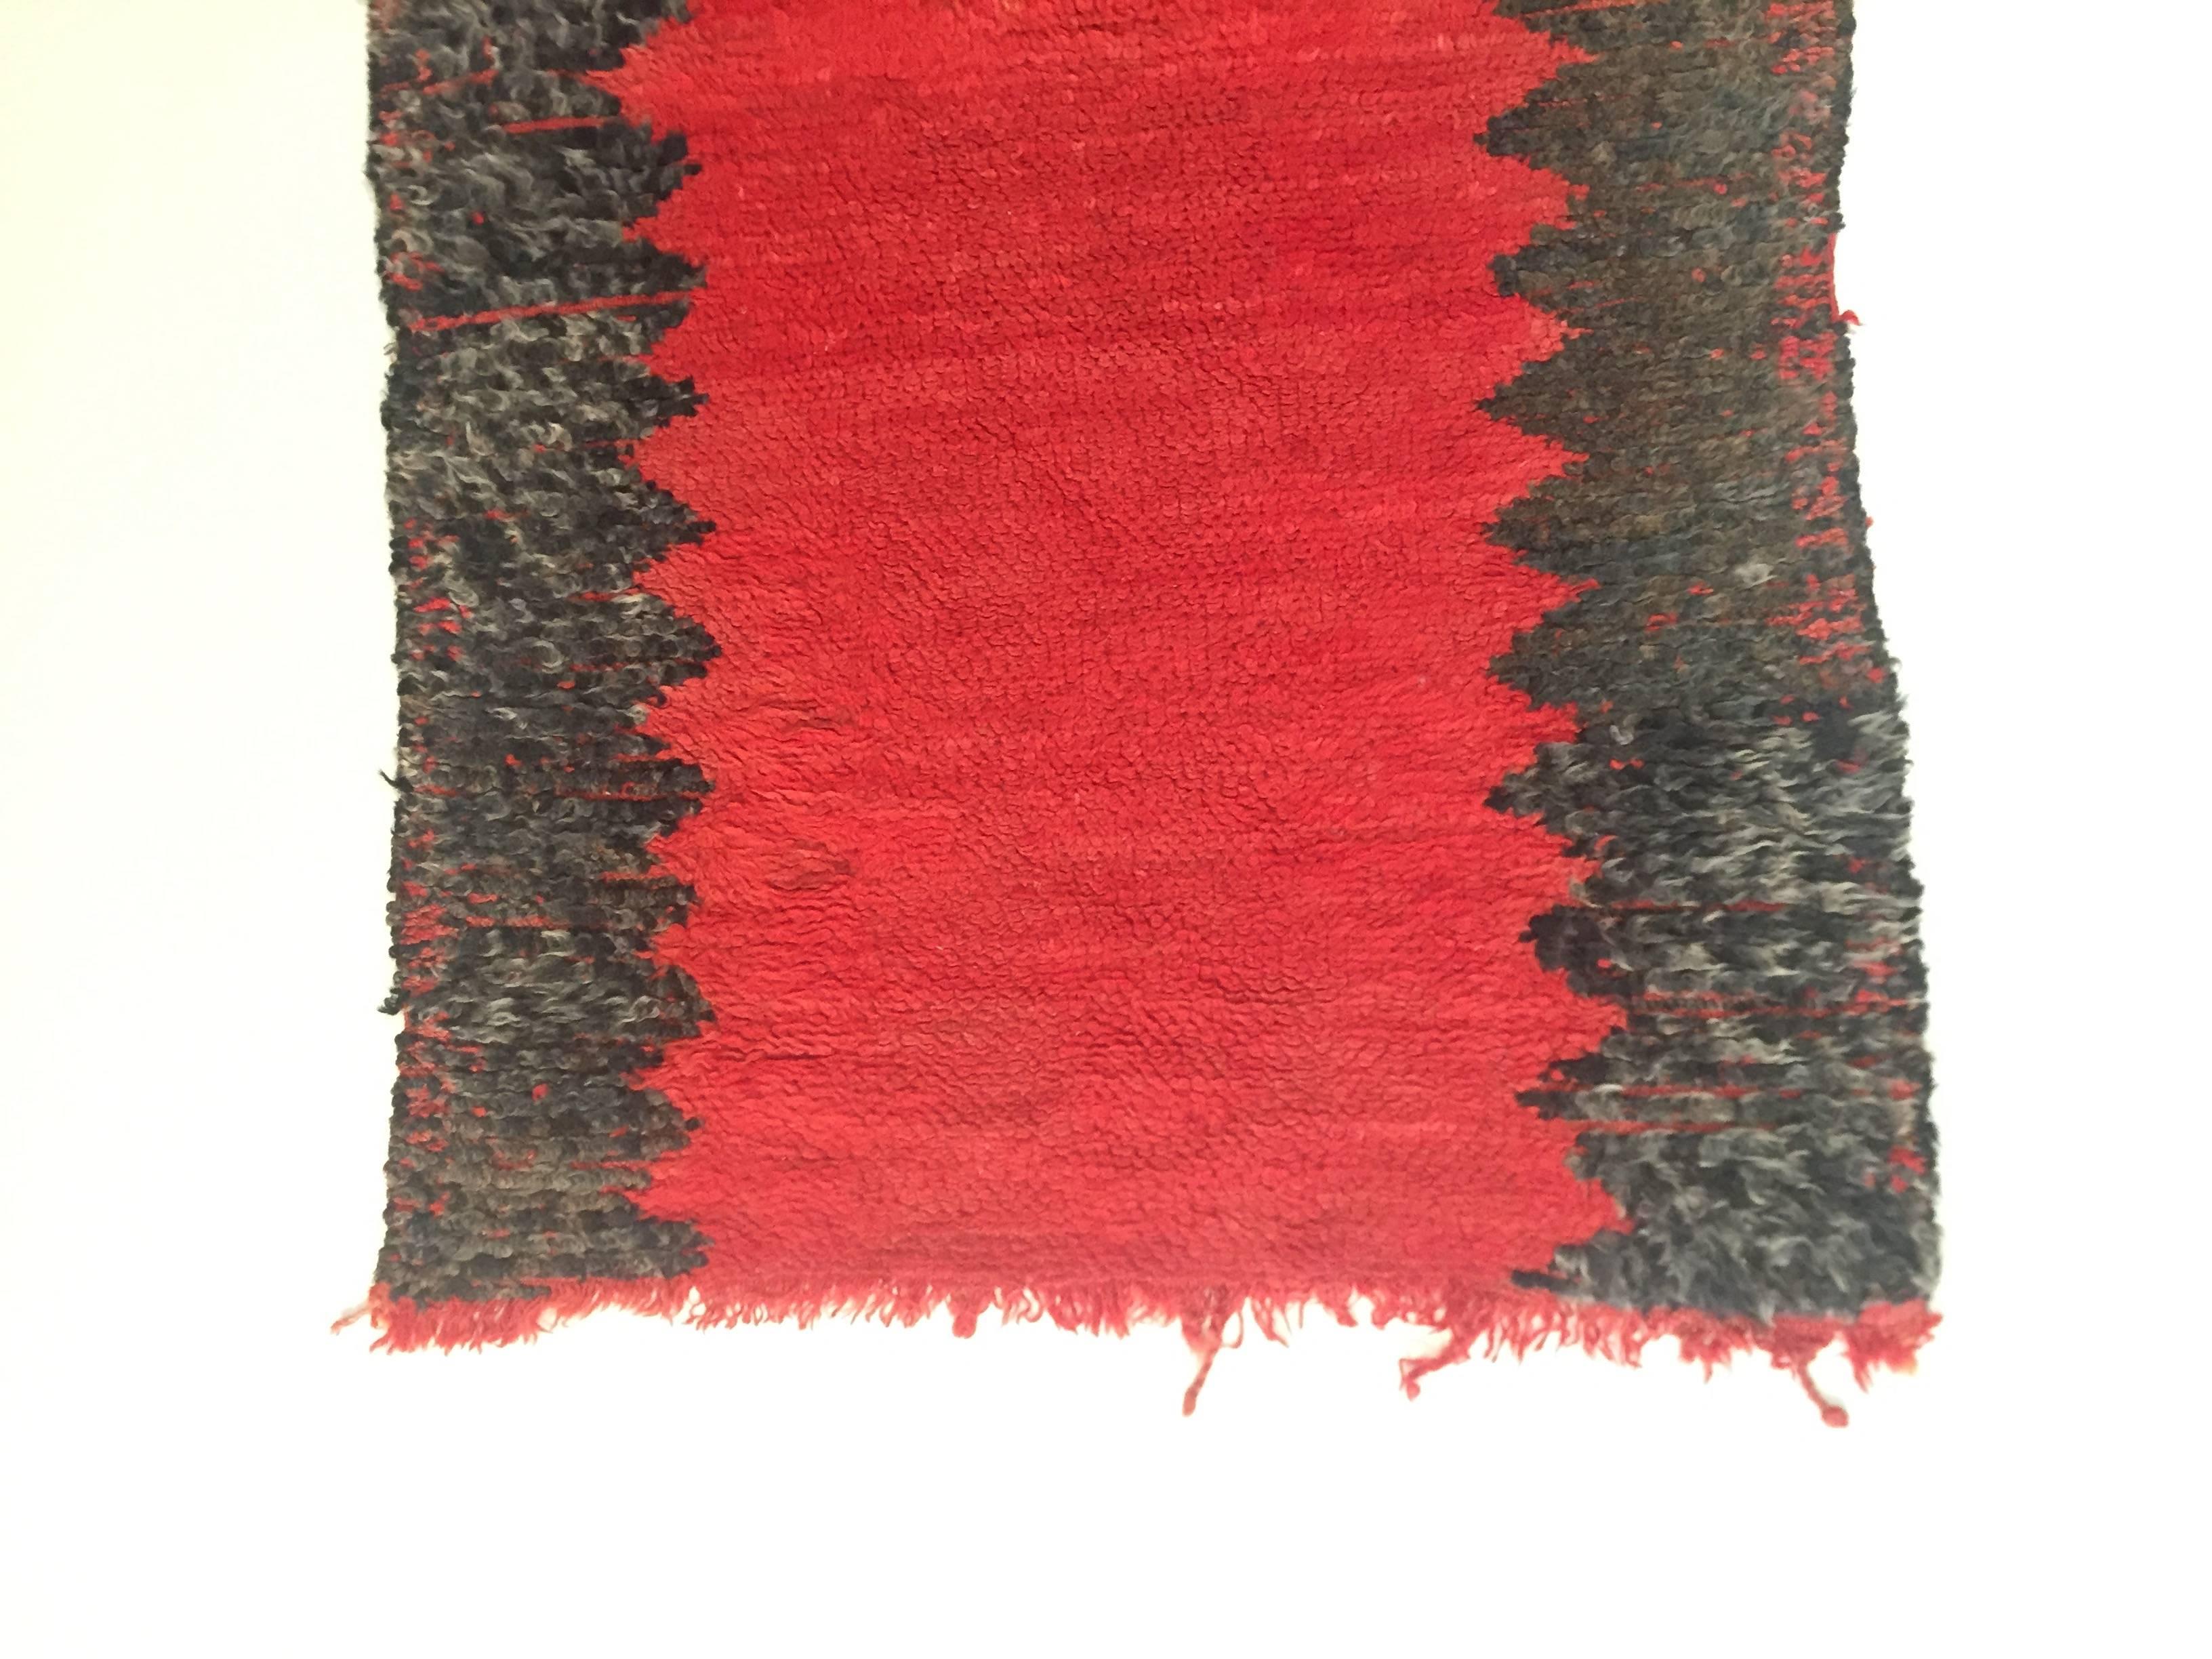 Berberteppich in der Region Imouzzer-Kandar aus den 1960er Jahren. Diese Teppiche der naiven Kunst beziehen ihre Stärke aus der Wesentlichkeit des Designs. Die Farben sind kräftig und stehen im Kontrast zur trockenen und sonnigen Landschaft des